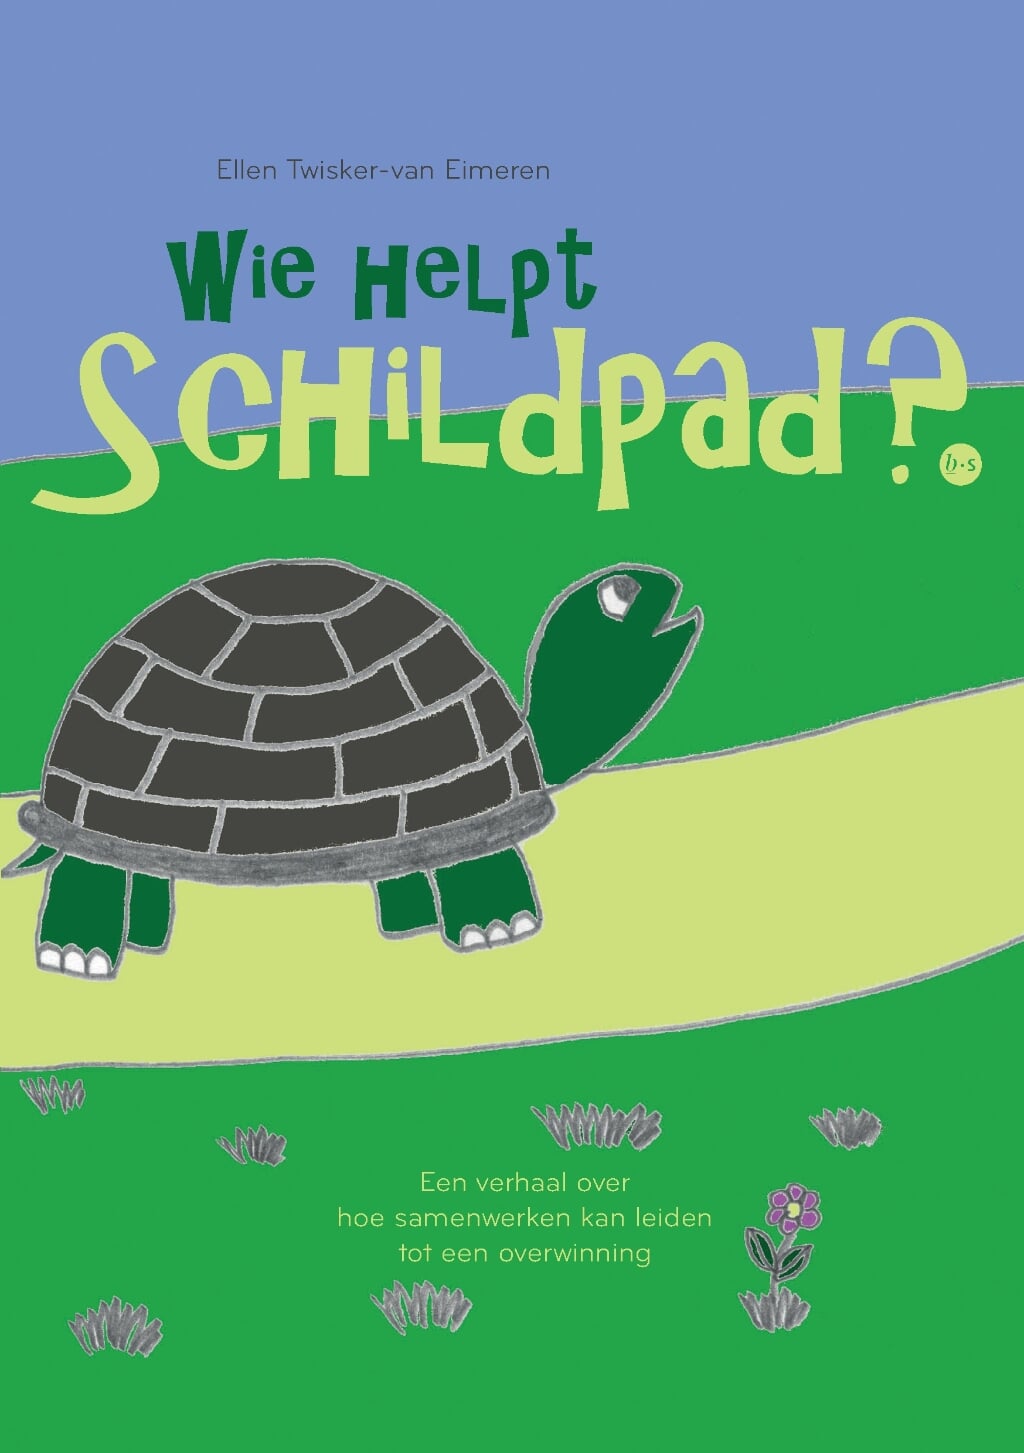 Ellen heeft net haar boek Wie helpt schildpad? uitgebracht. 